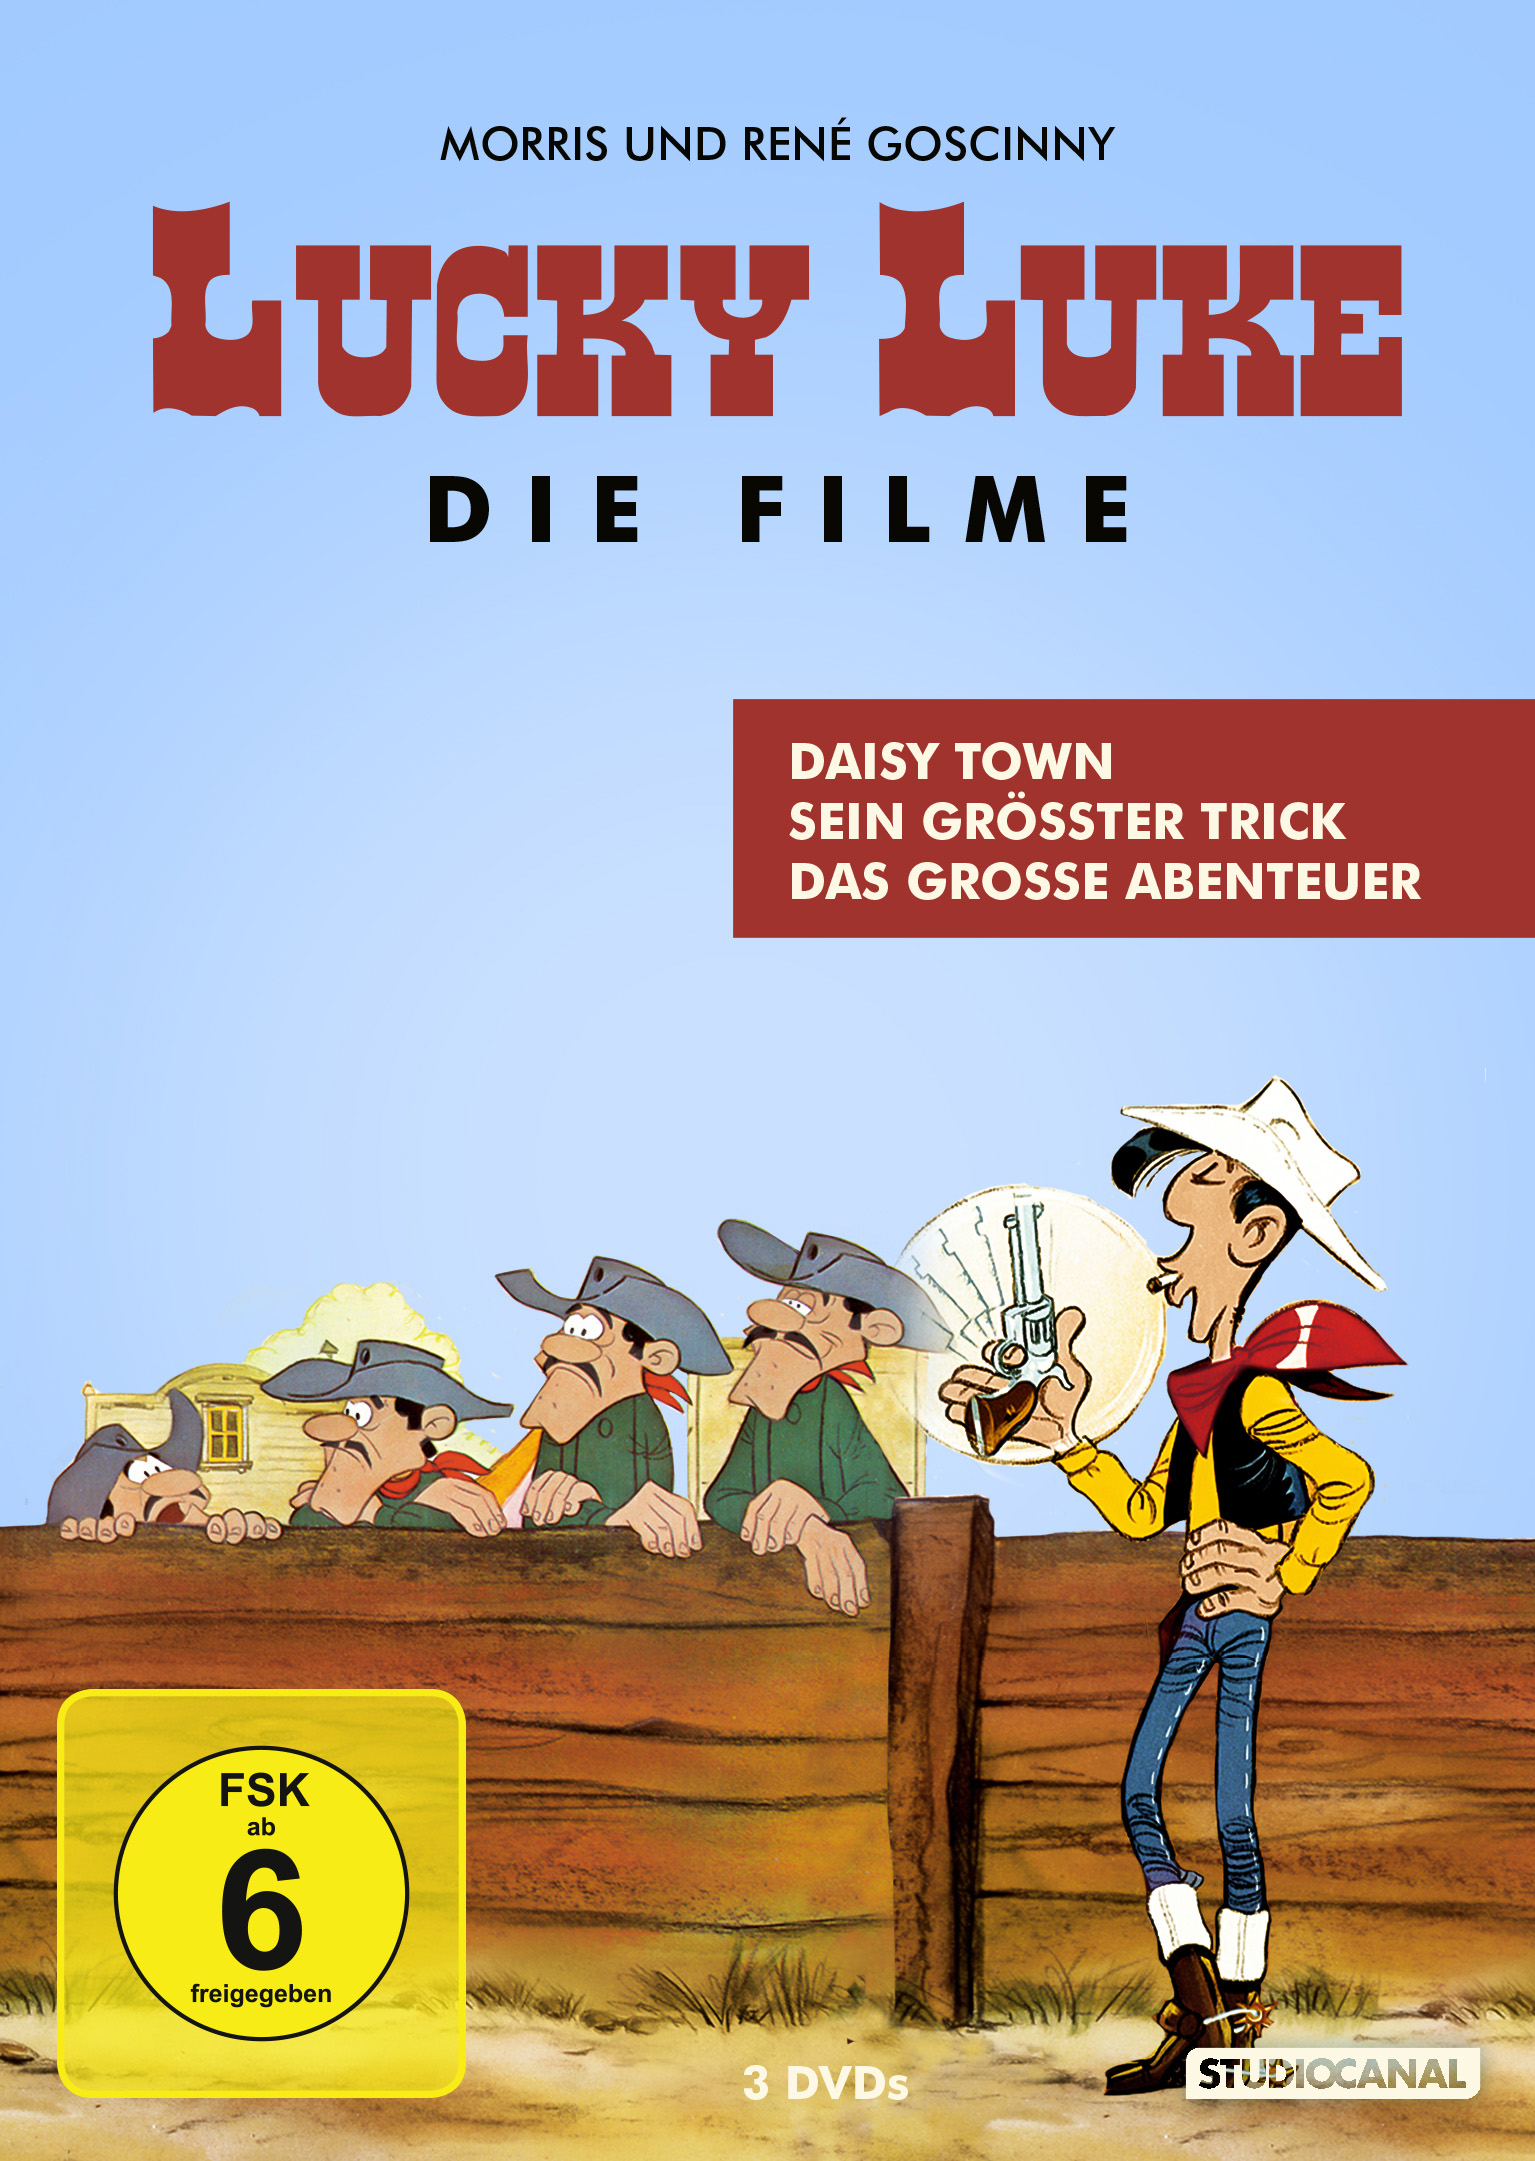 Daisy Town, Sein Trick, grösster Abenteuer grosse Das DVD